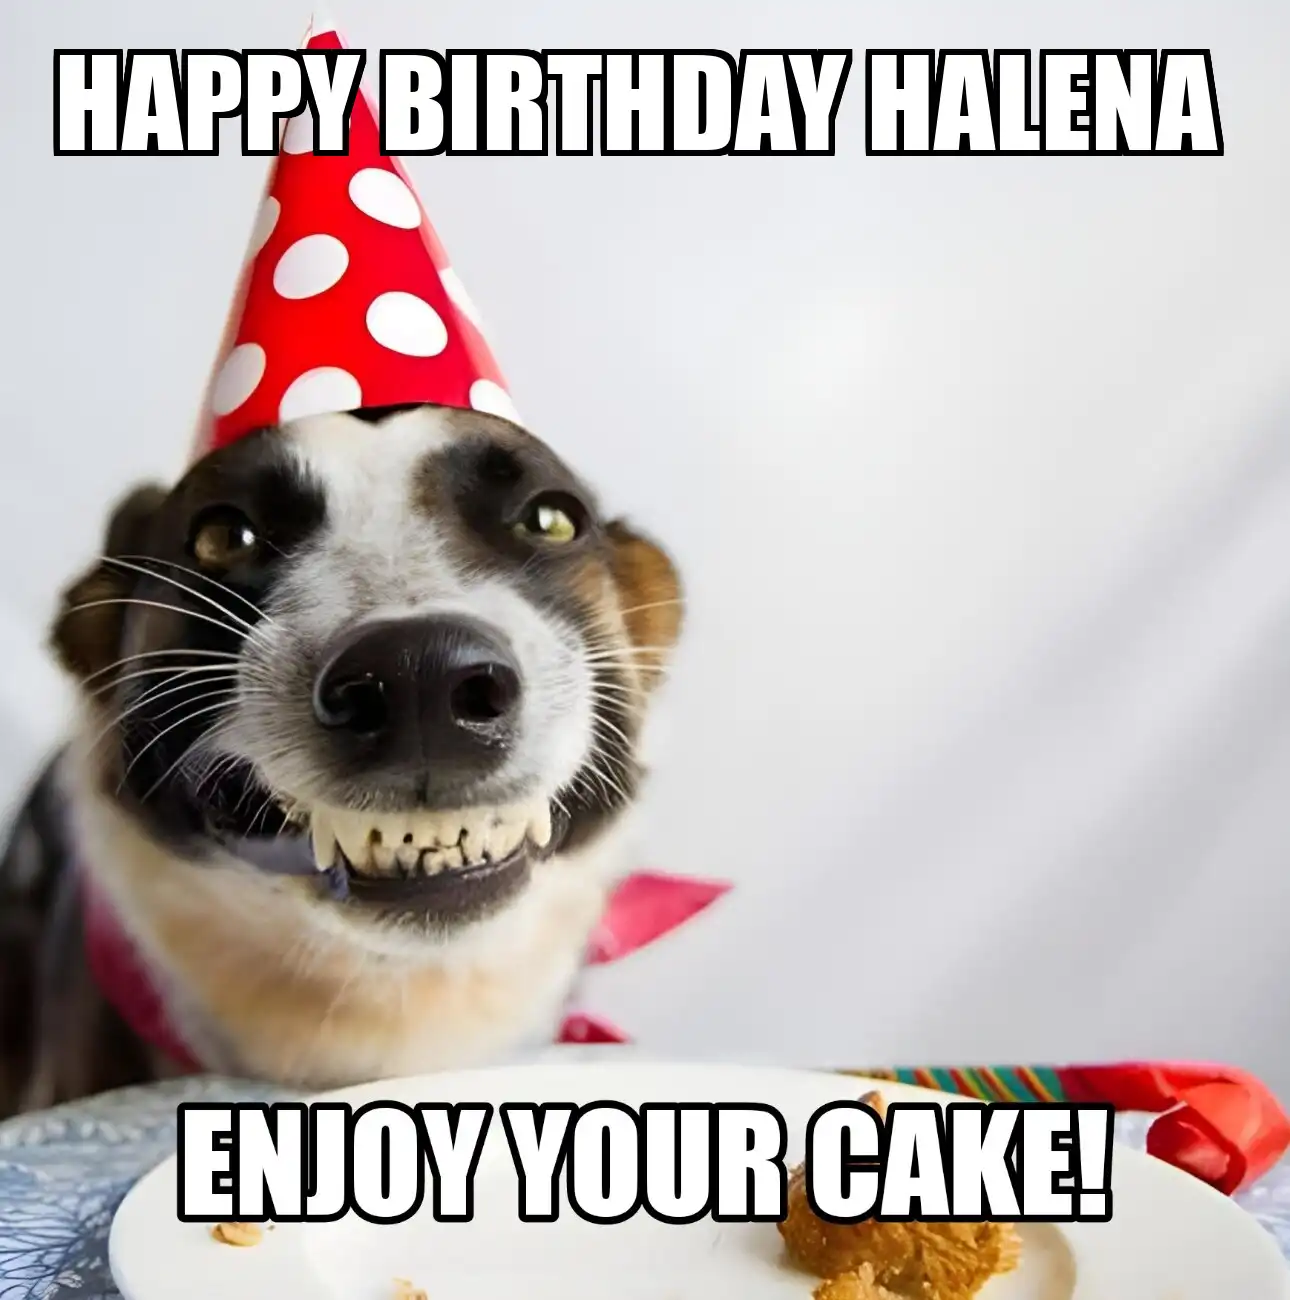 Happy Birthday Halena Enjoy Your Cake Dog Meme